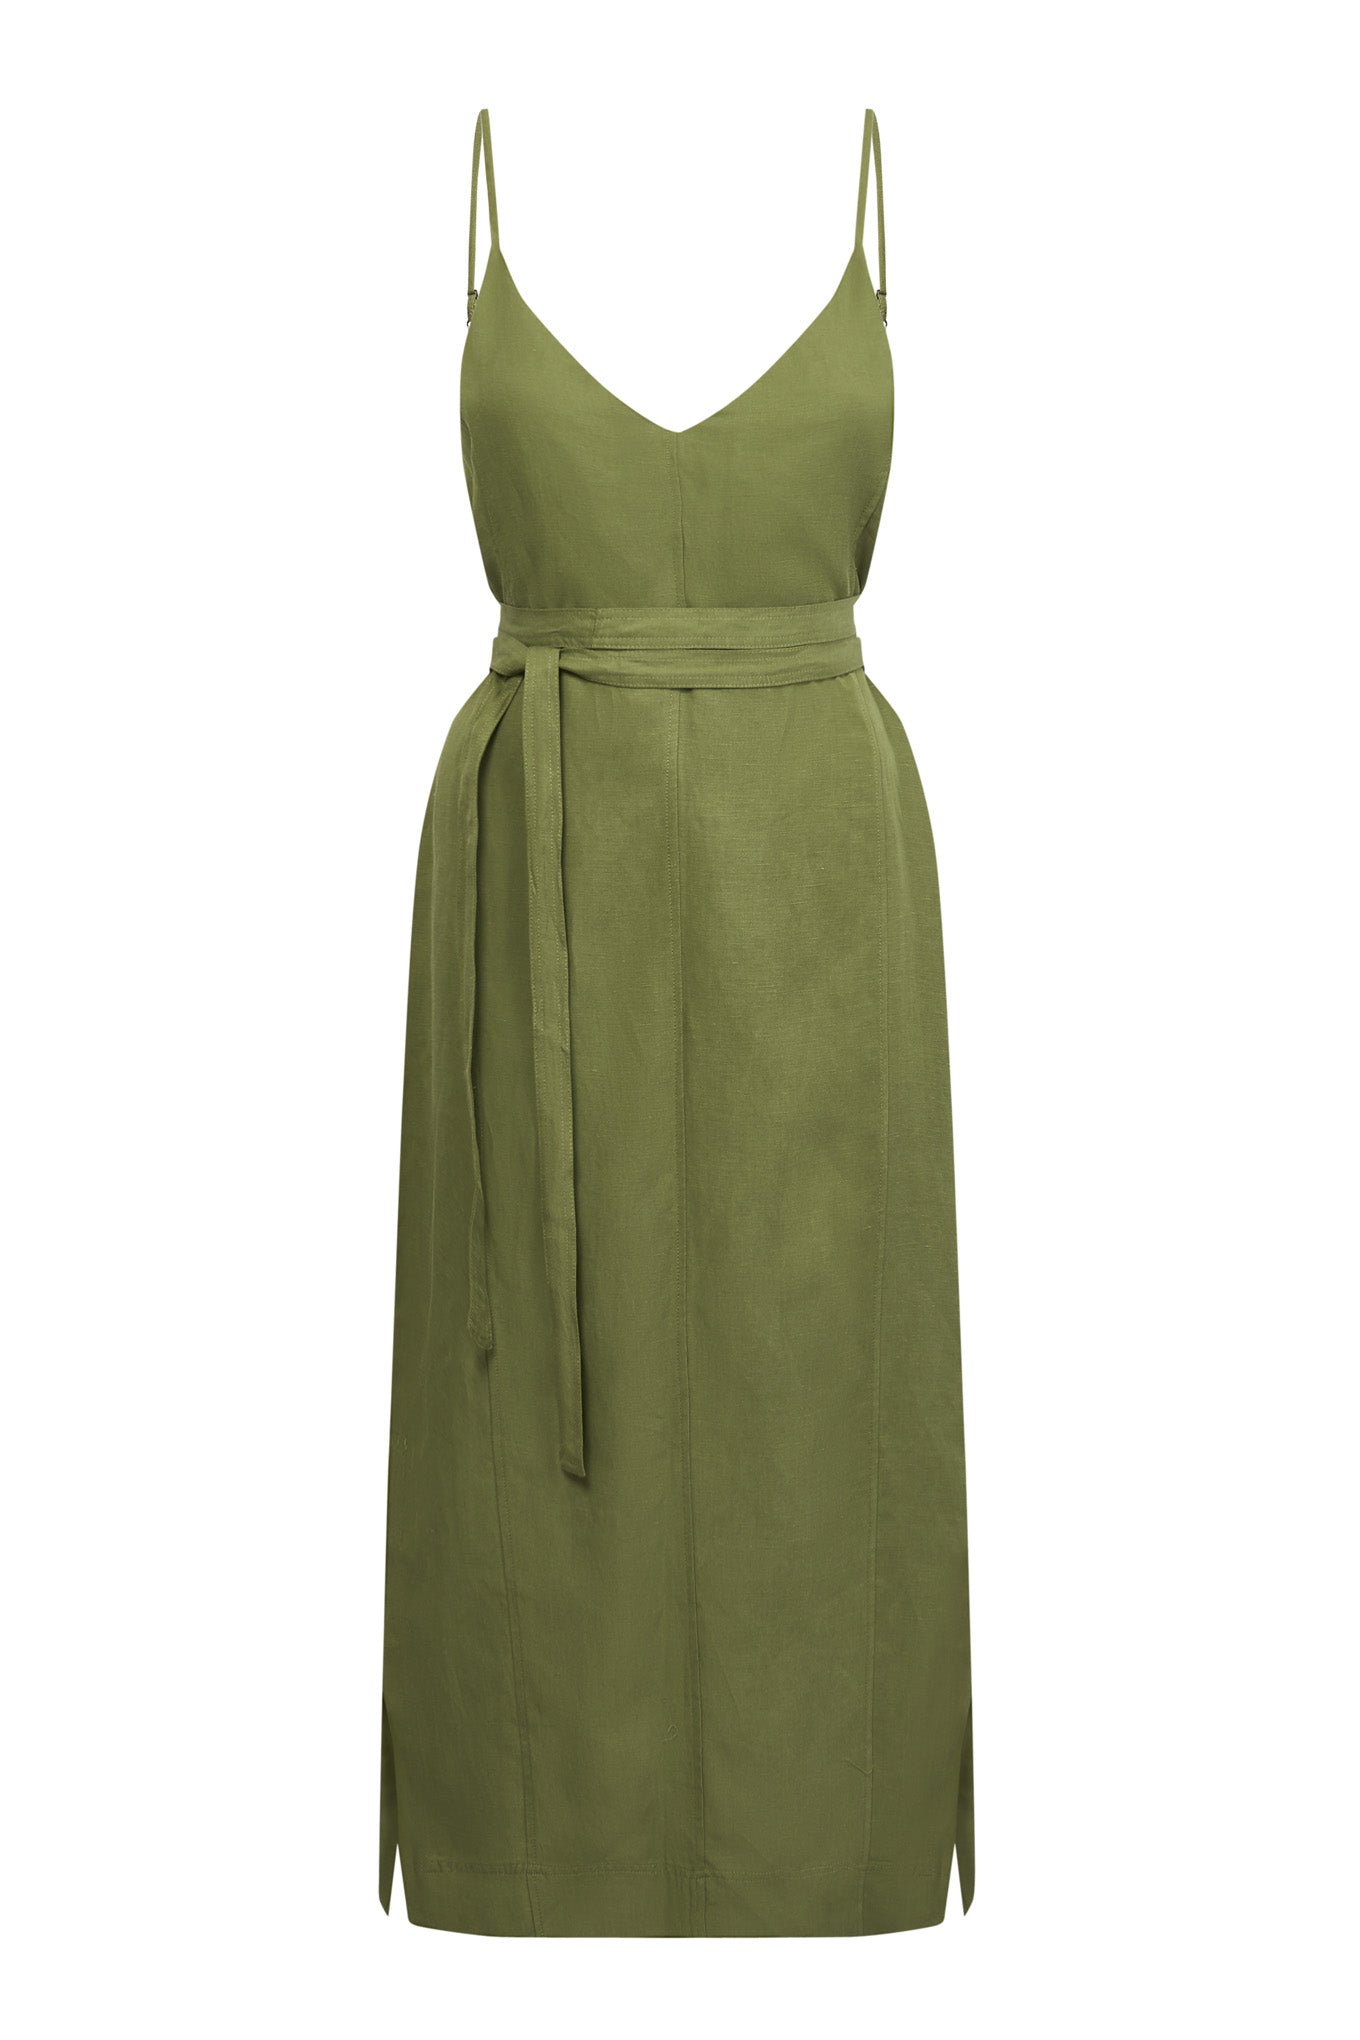 Grünes Kleid IMAN aus Tencel und Leinen von Komodo